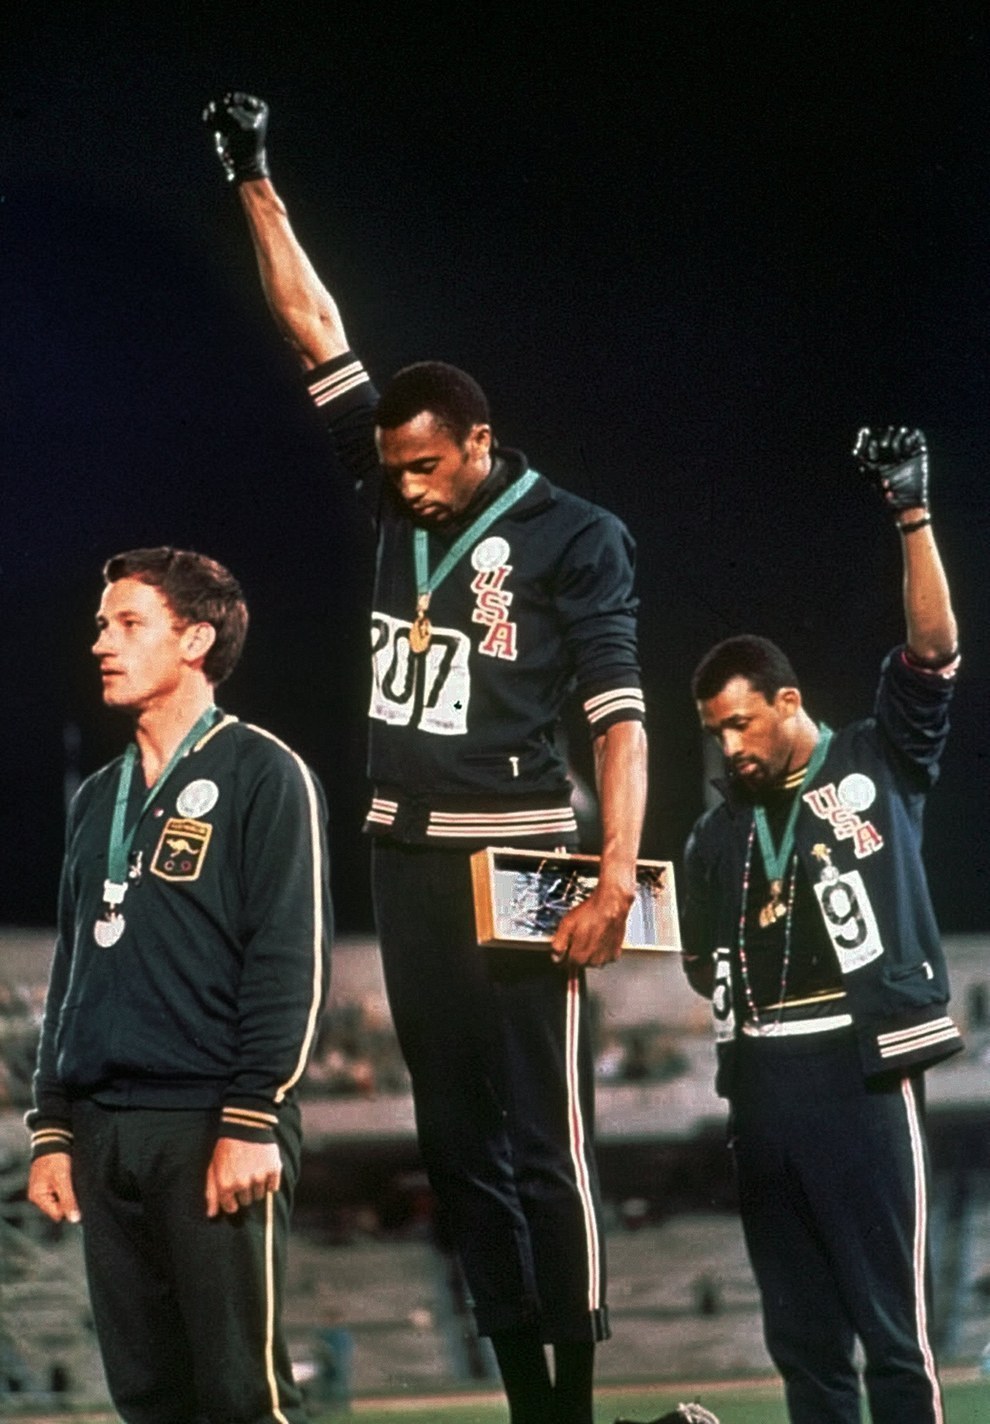 El saludo Black Power del medallista de oro Tommie Smith y el de bronce John Carlos durante los Juegos Olímpicos de verano en 1968.